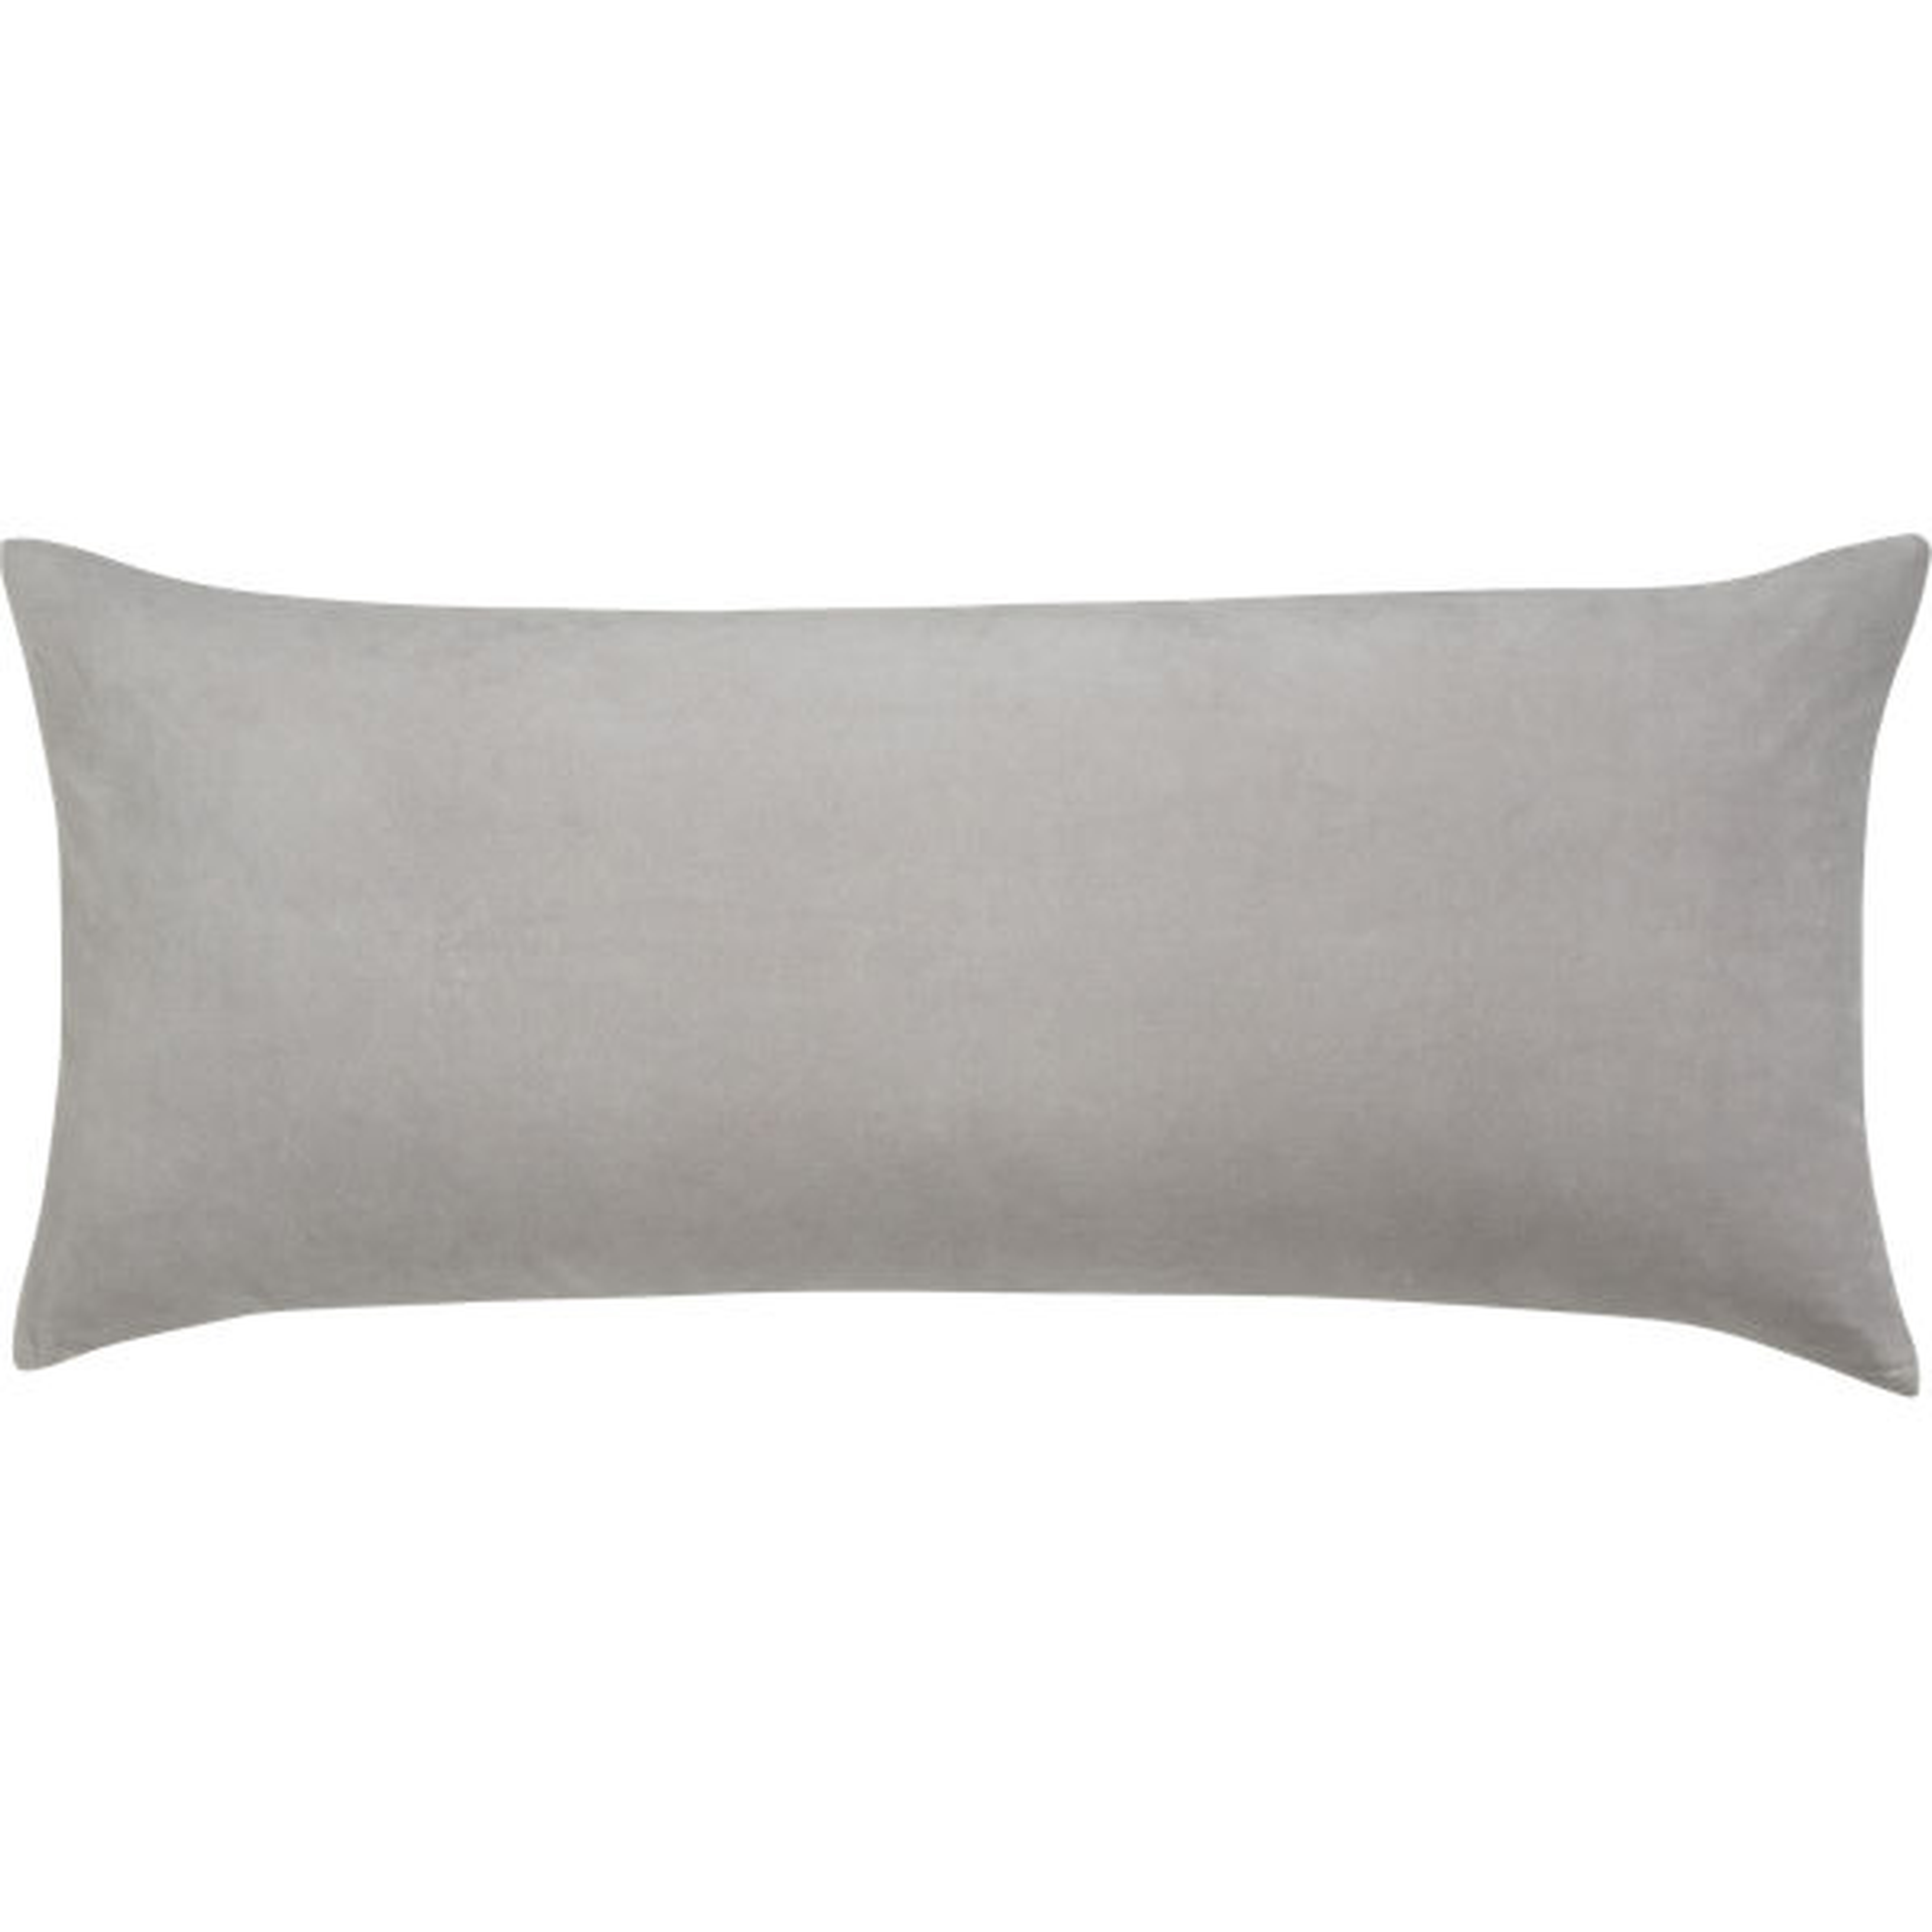 Leisure Silver Grey Pillow 36" x 16" Pillow-Insert - CB2